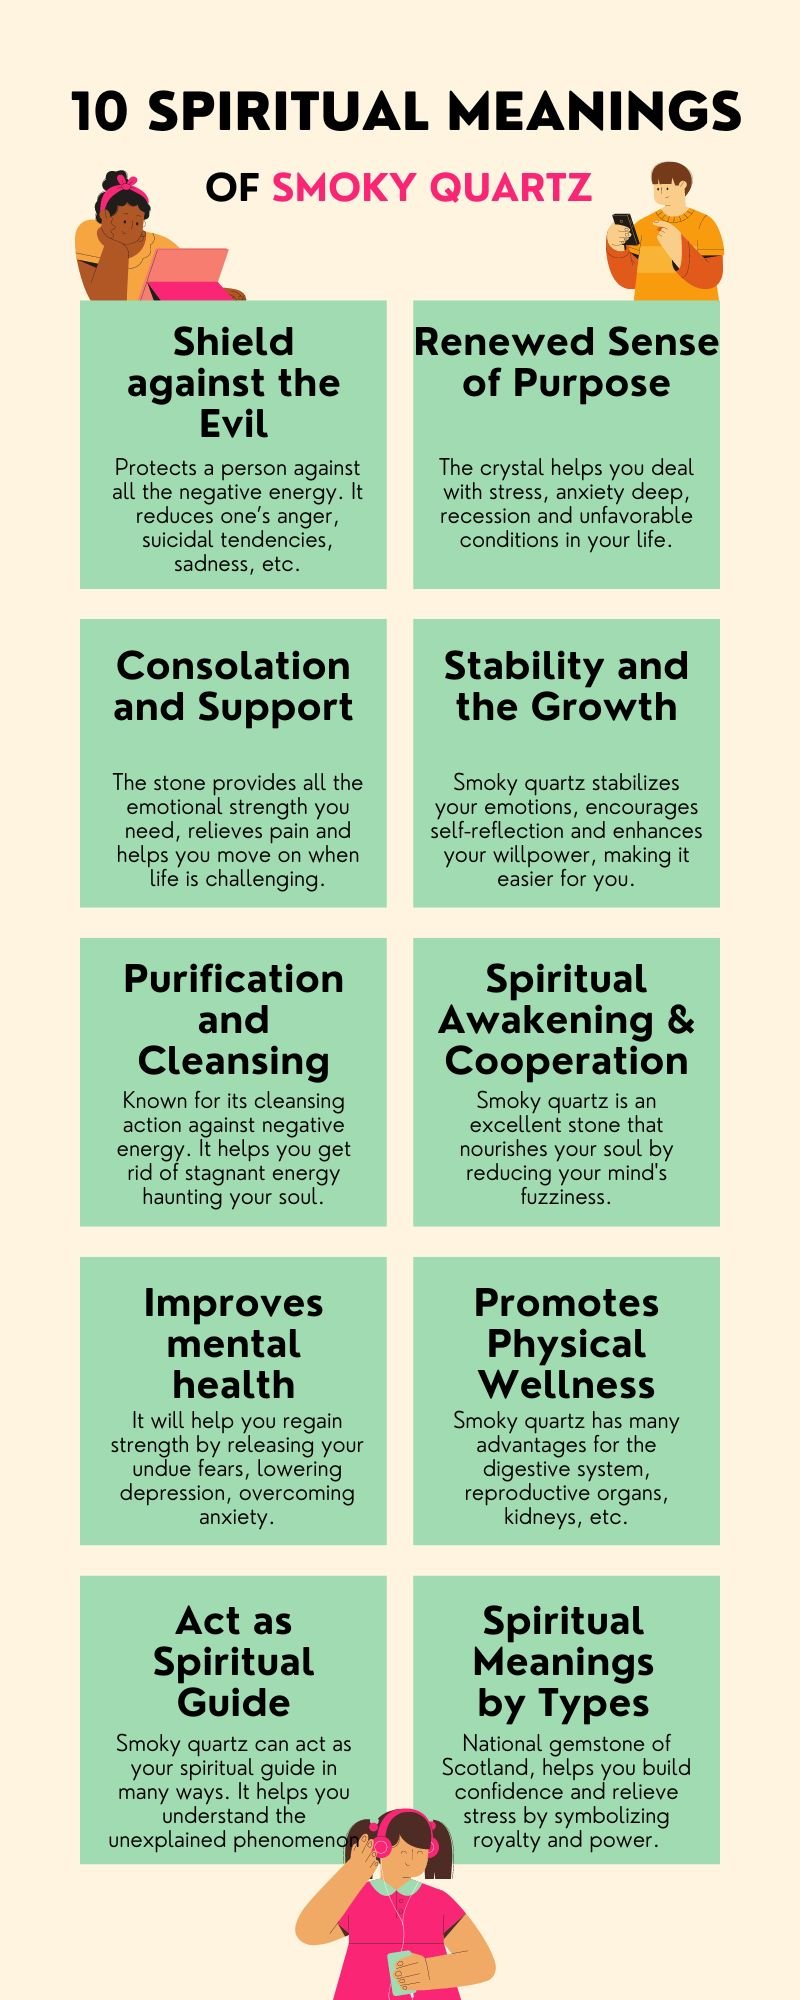 10 Spiritual Meanings of Smoky Quartz